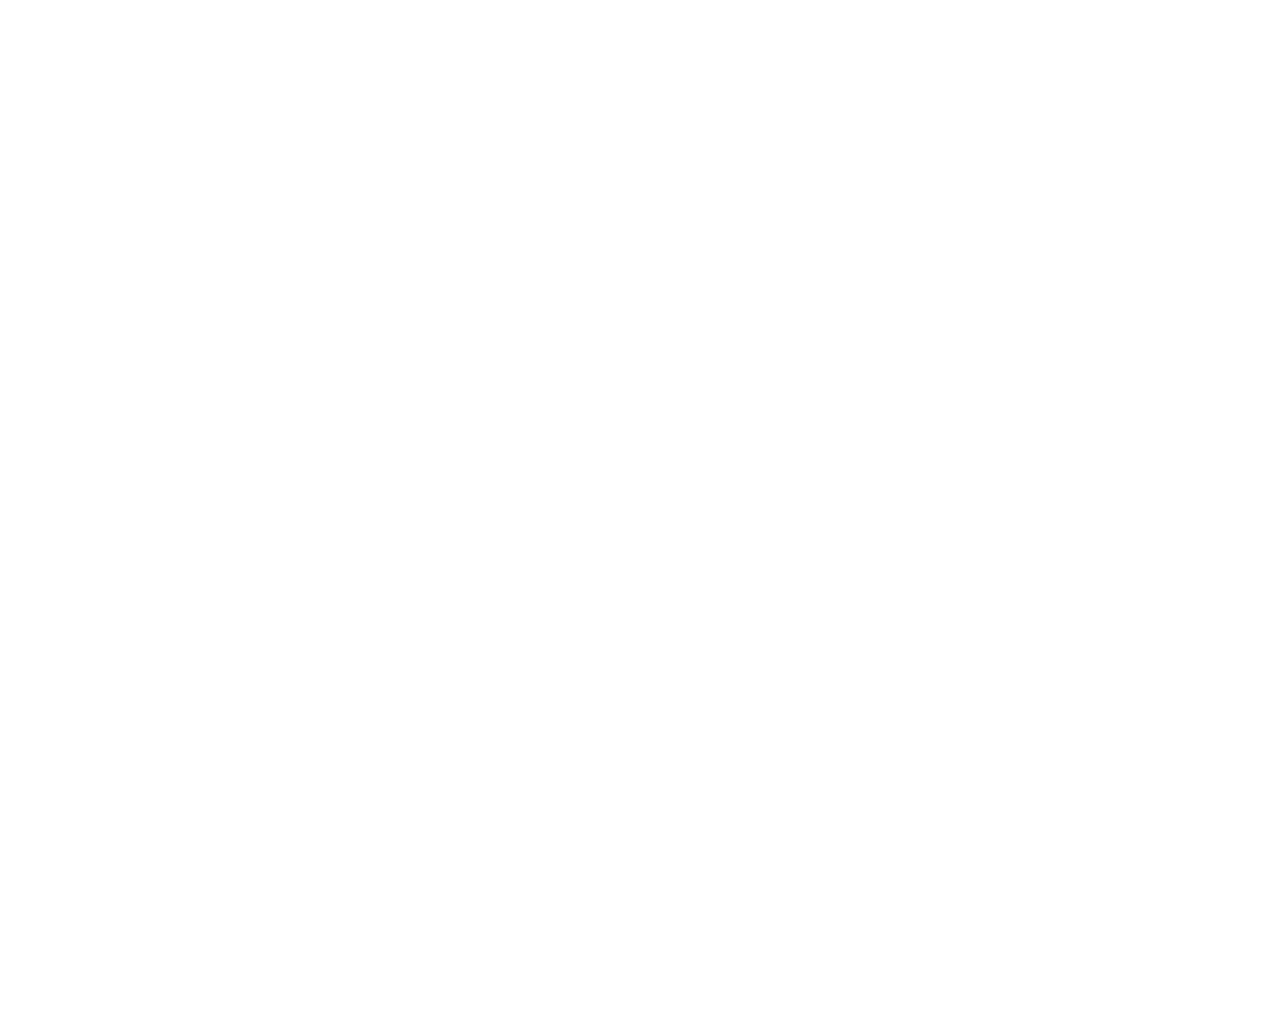 One Metro Center